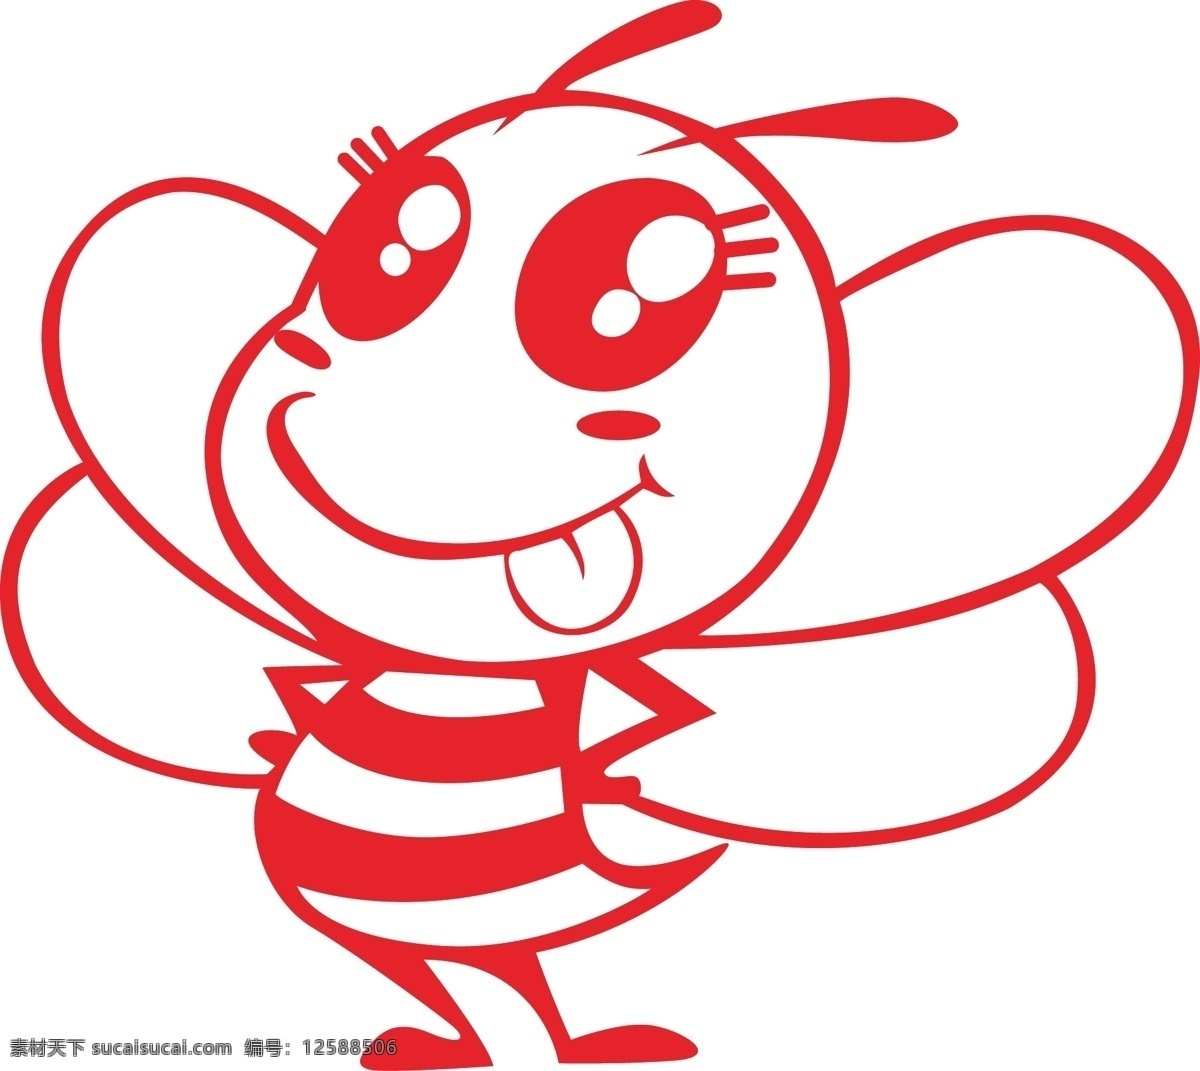 蜜蜂矢量图 蜜蜂 卡通蜜蜂 小精灵 蜜蜂线条